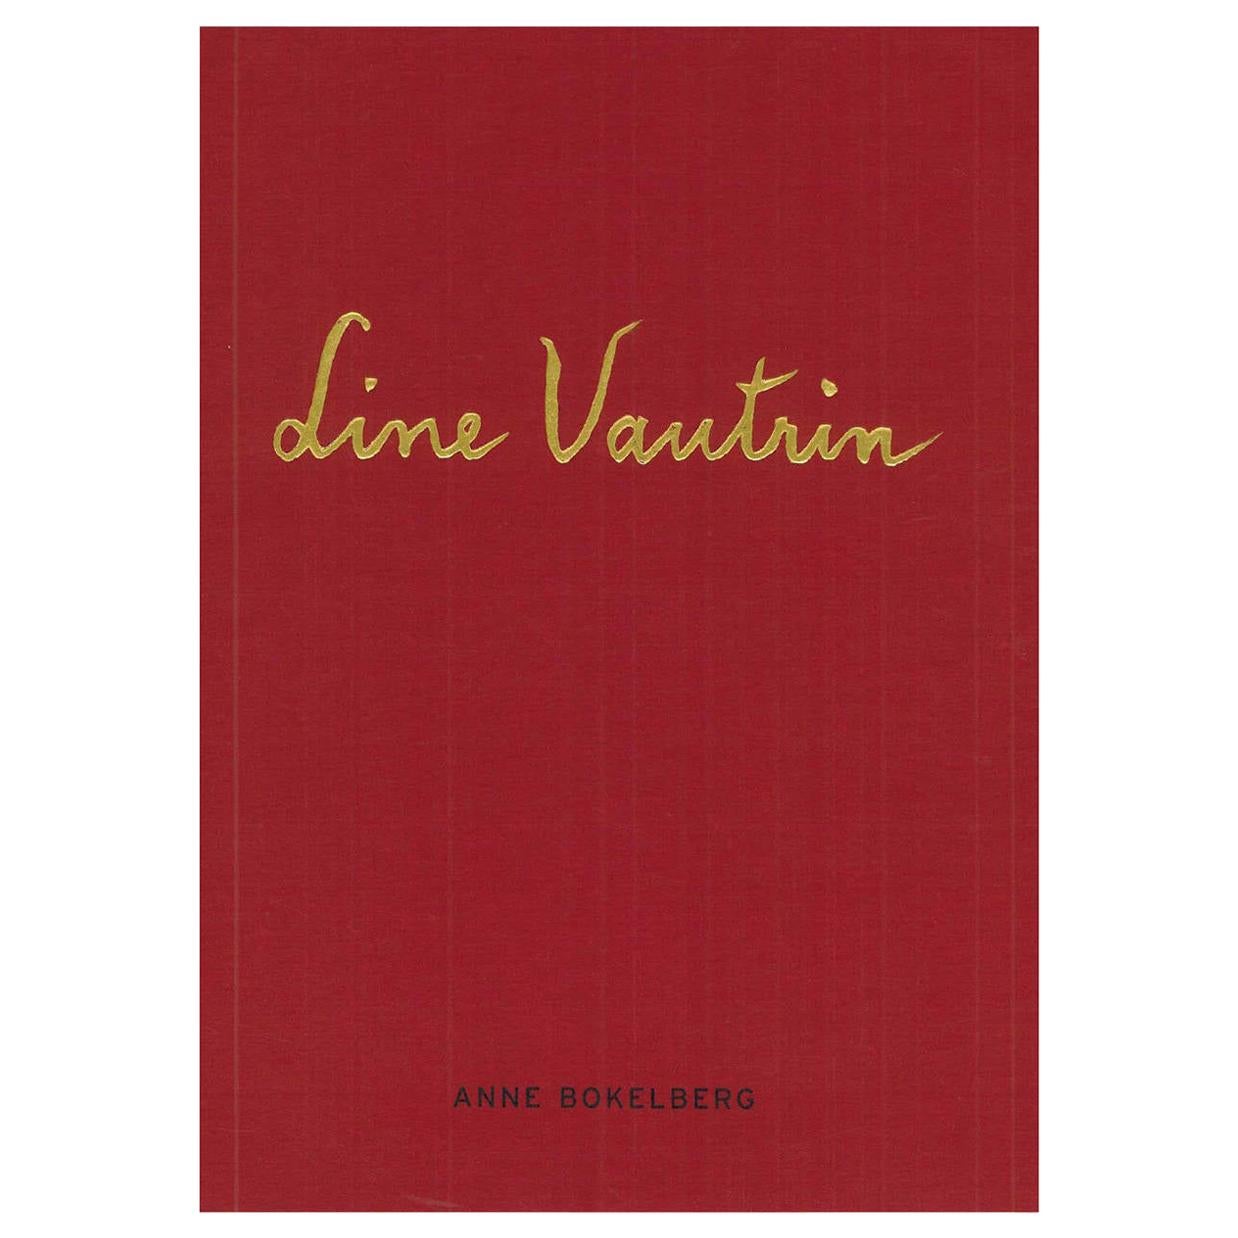 Book of Line Vautrin, Poesie in Metall